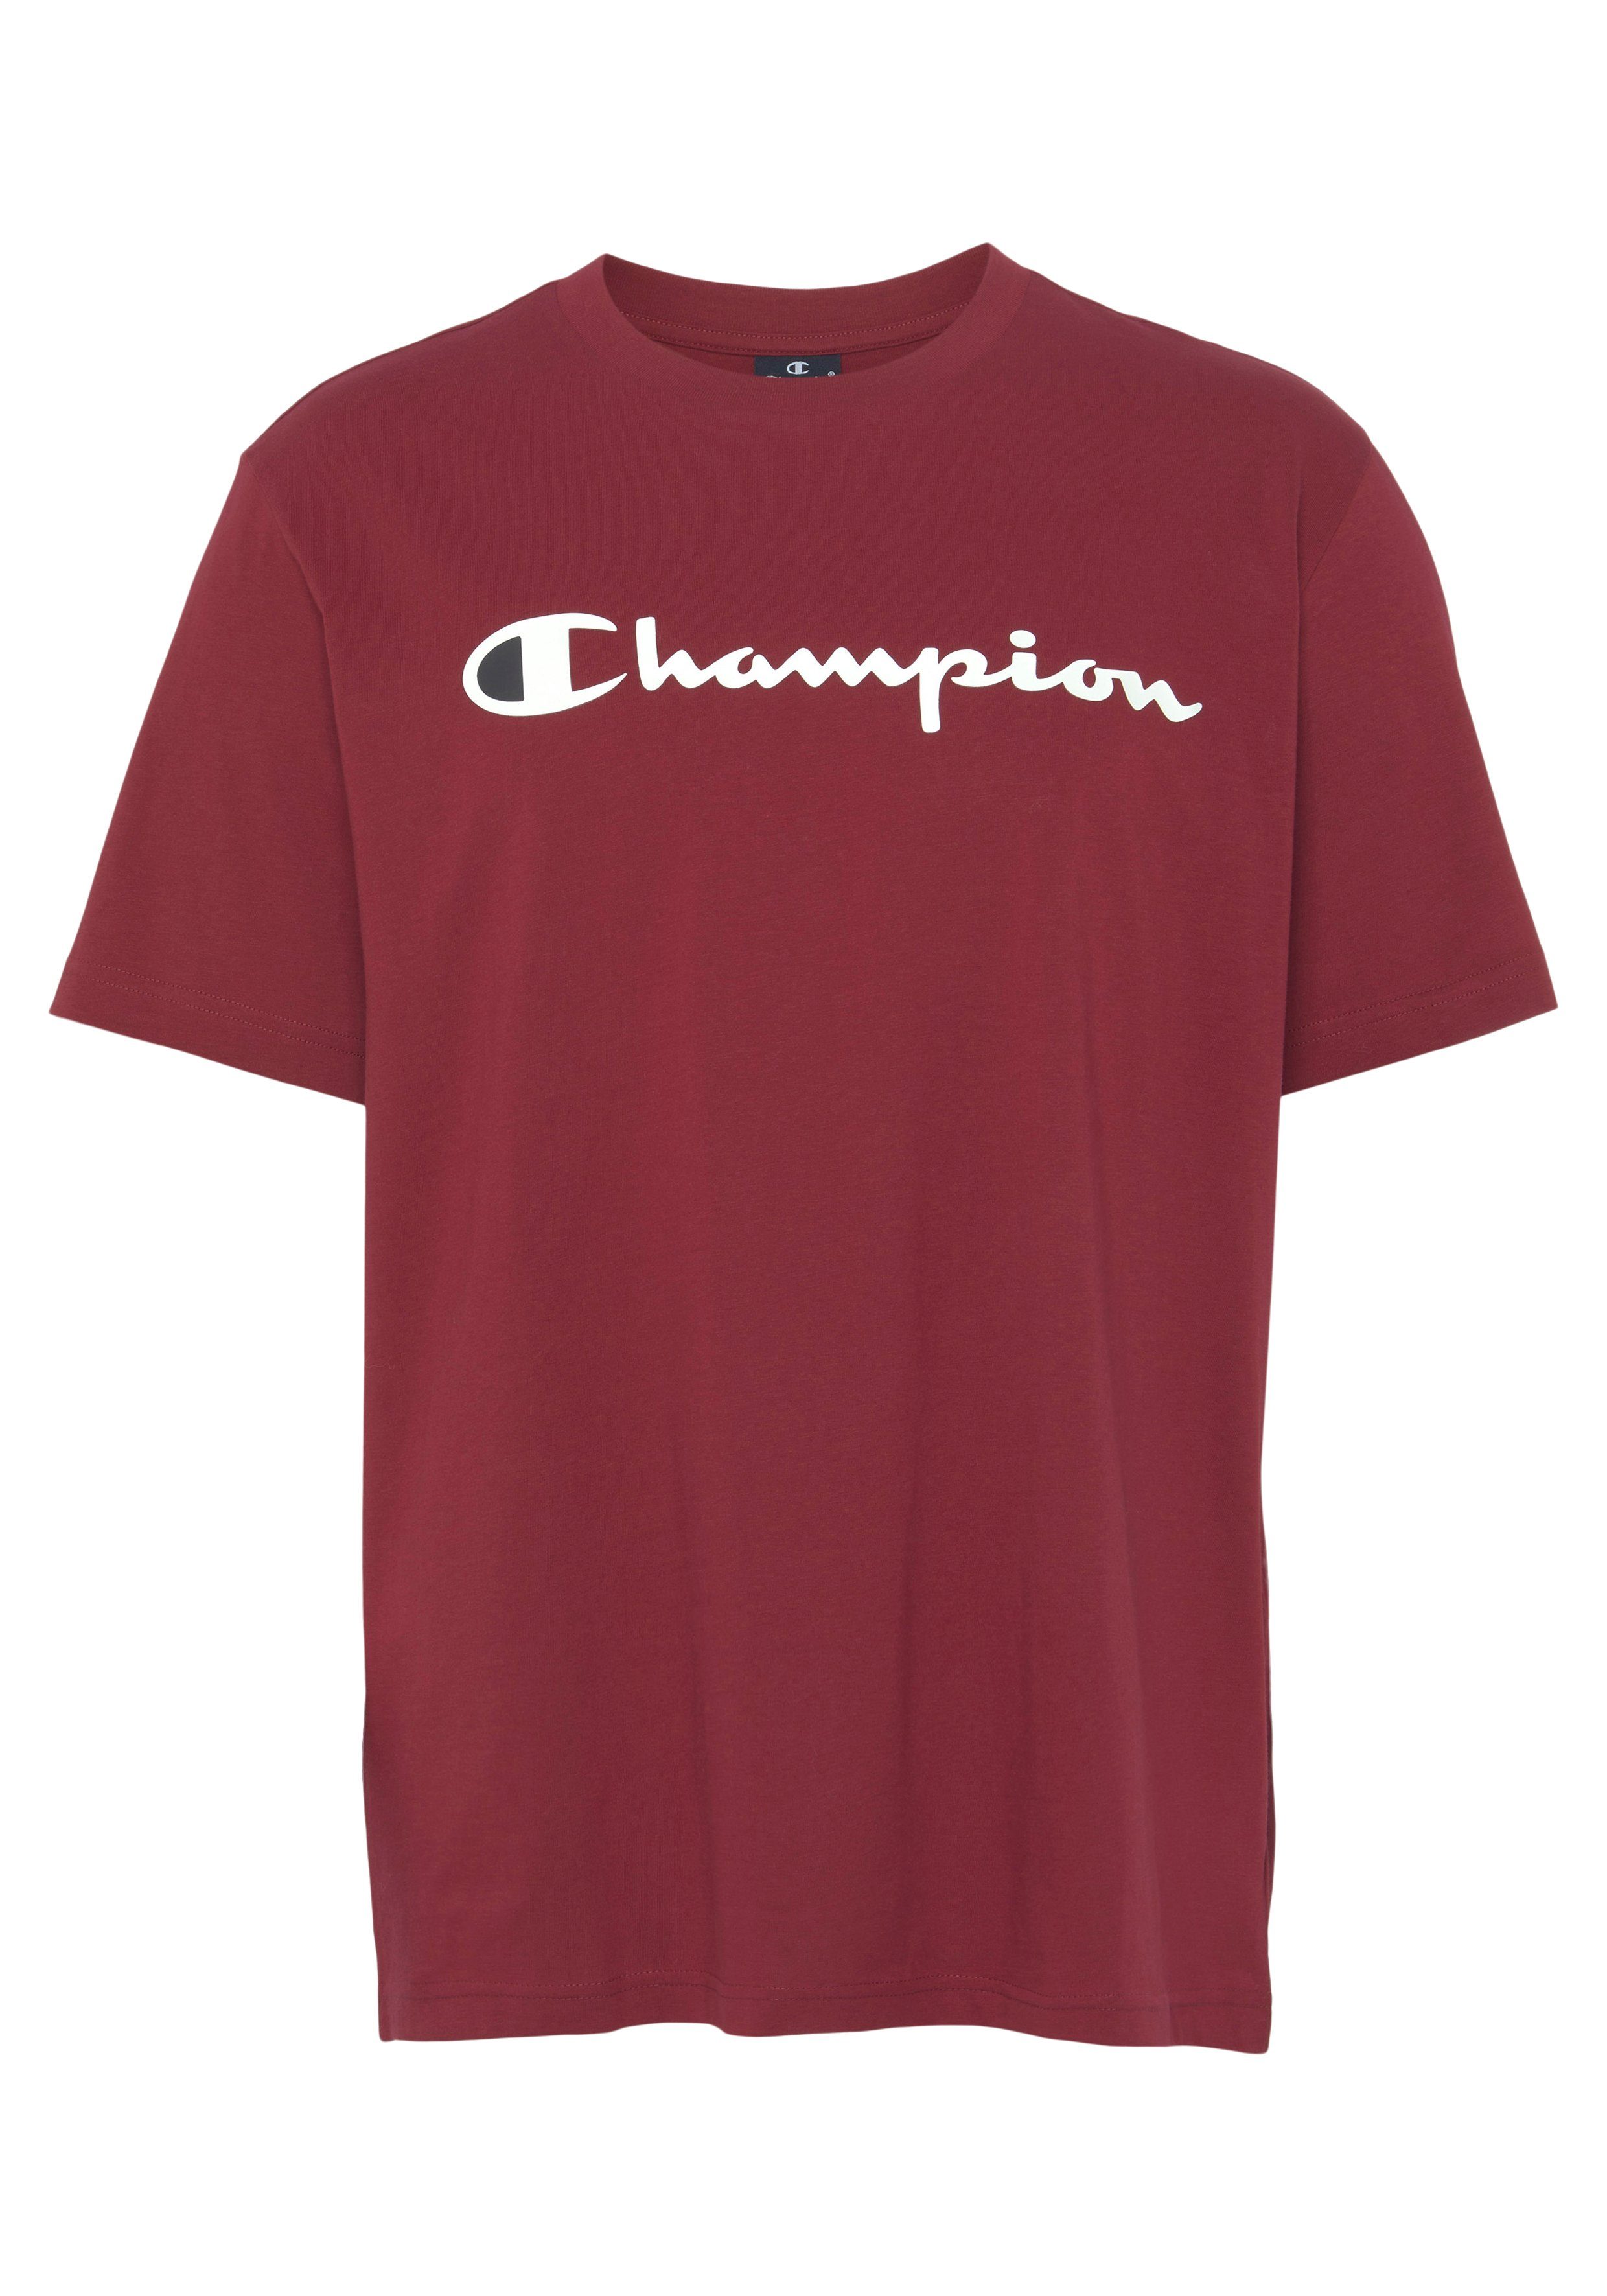 Champion T-Shirt Classic Crewneck T-Shirt large Logo bordeaux